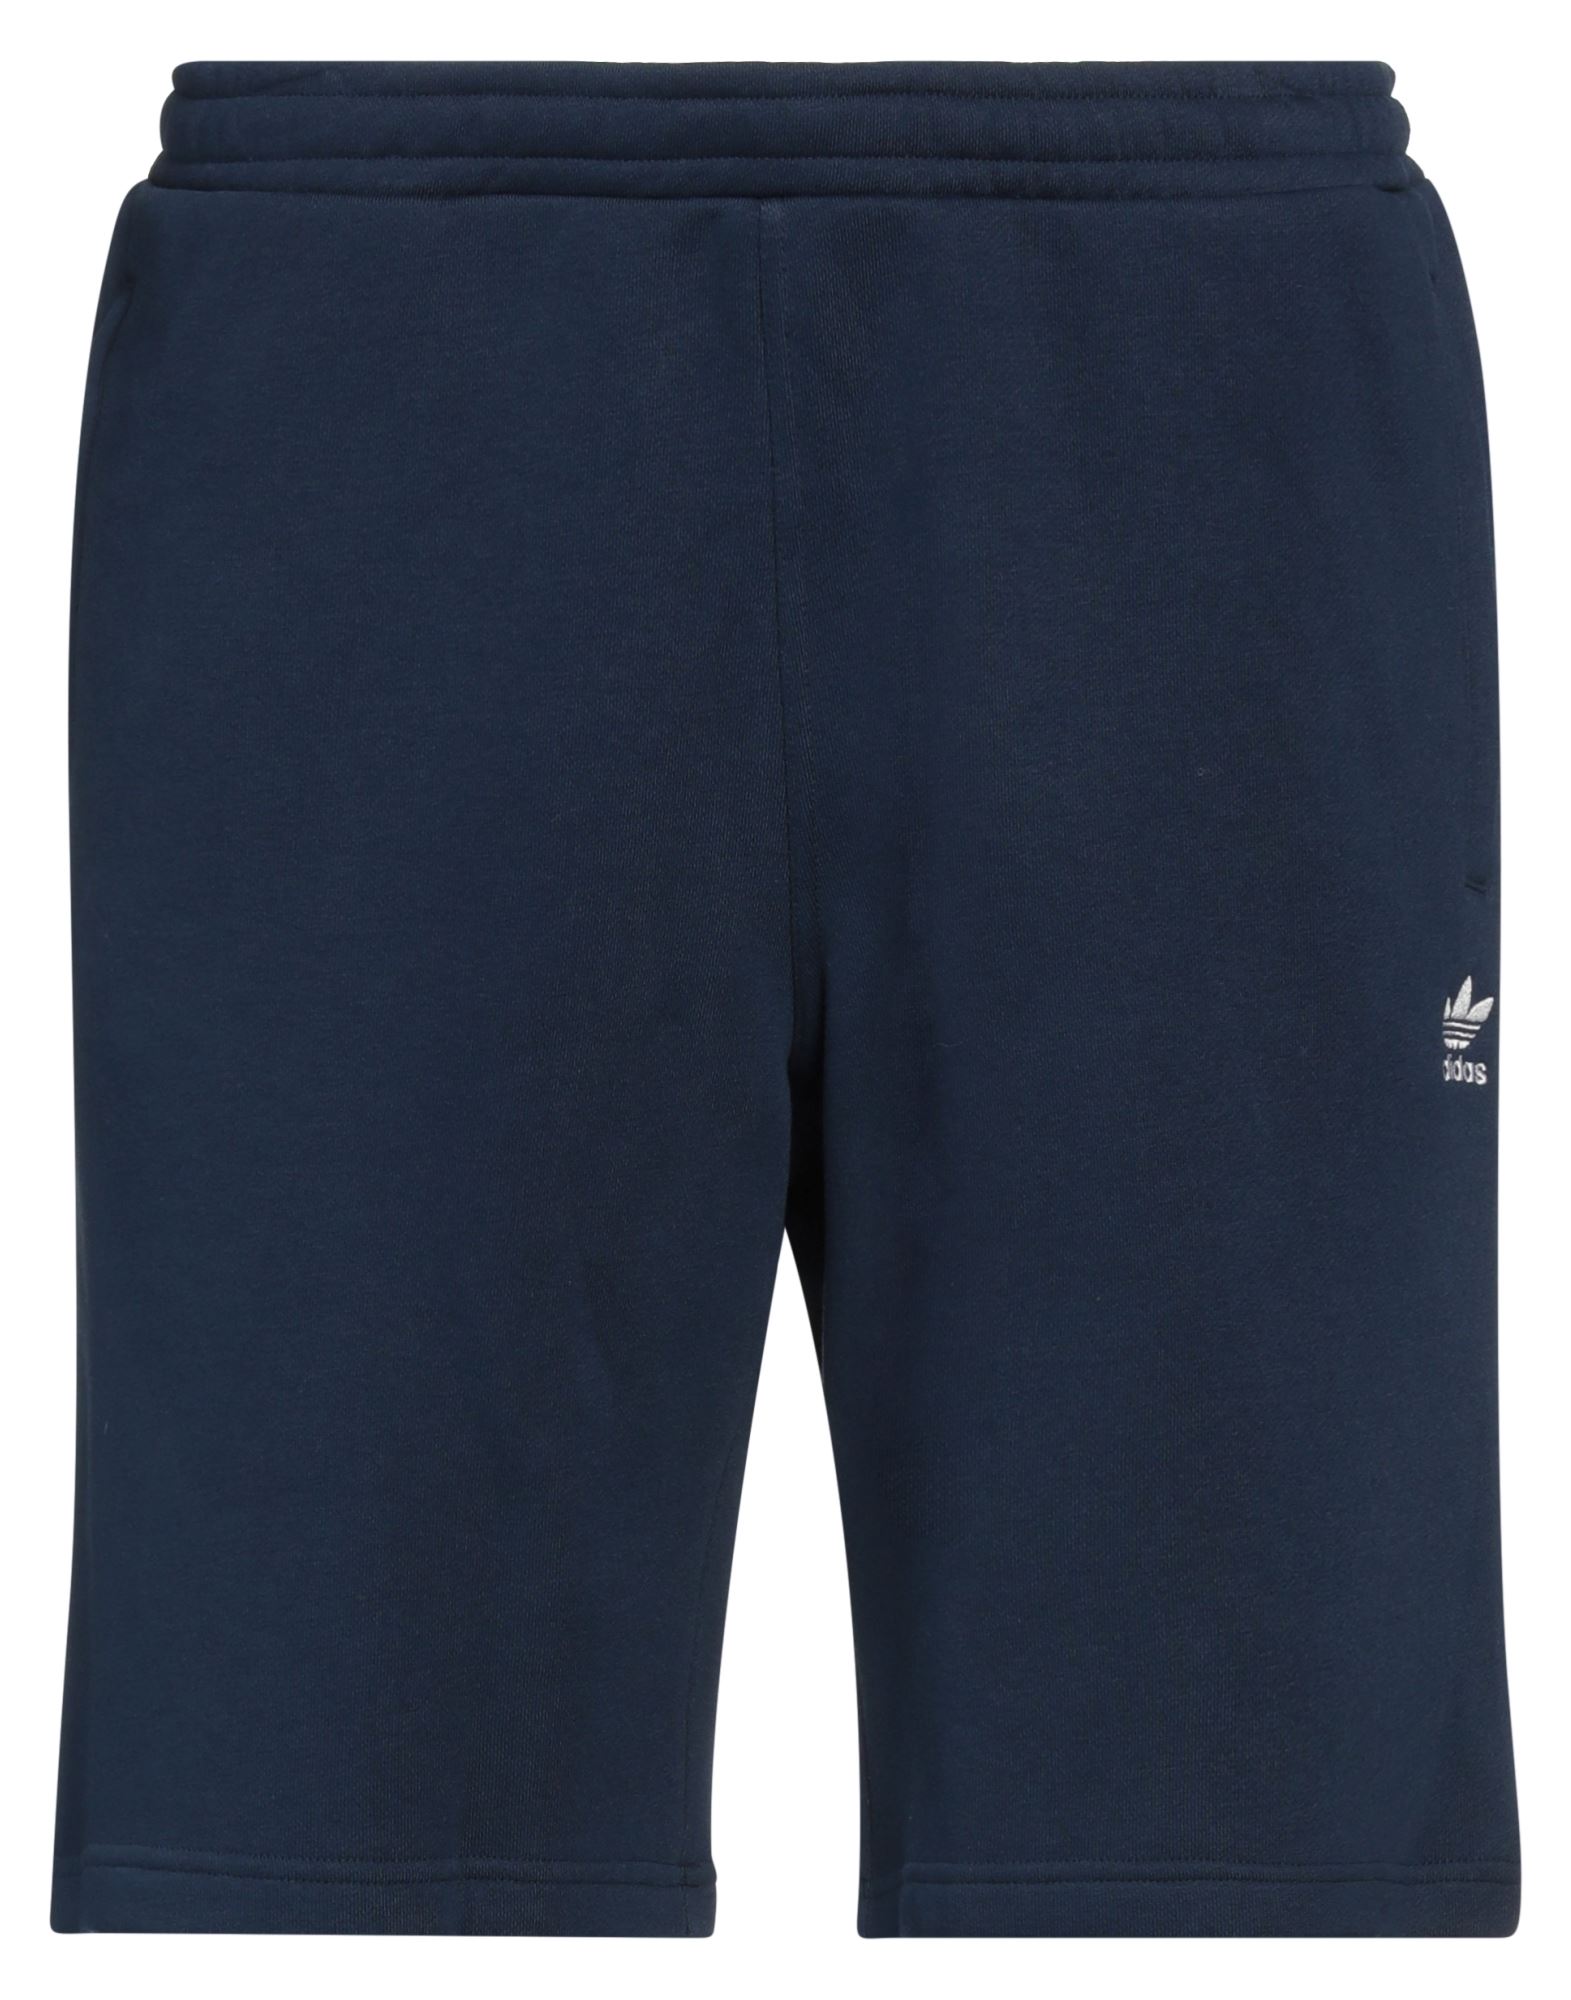 ADIDAS ORIGINALS Shorts & Bermudashorts Herren Nachtblau von ADIDAS ORIGINALS